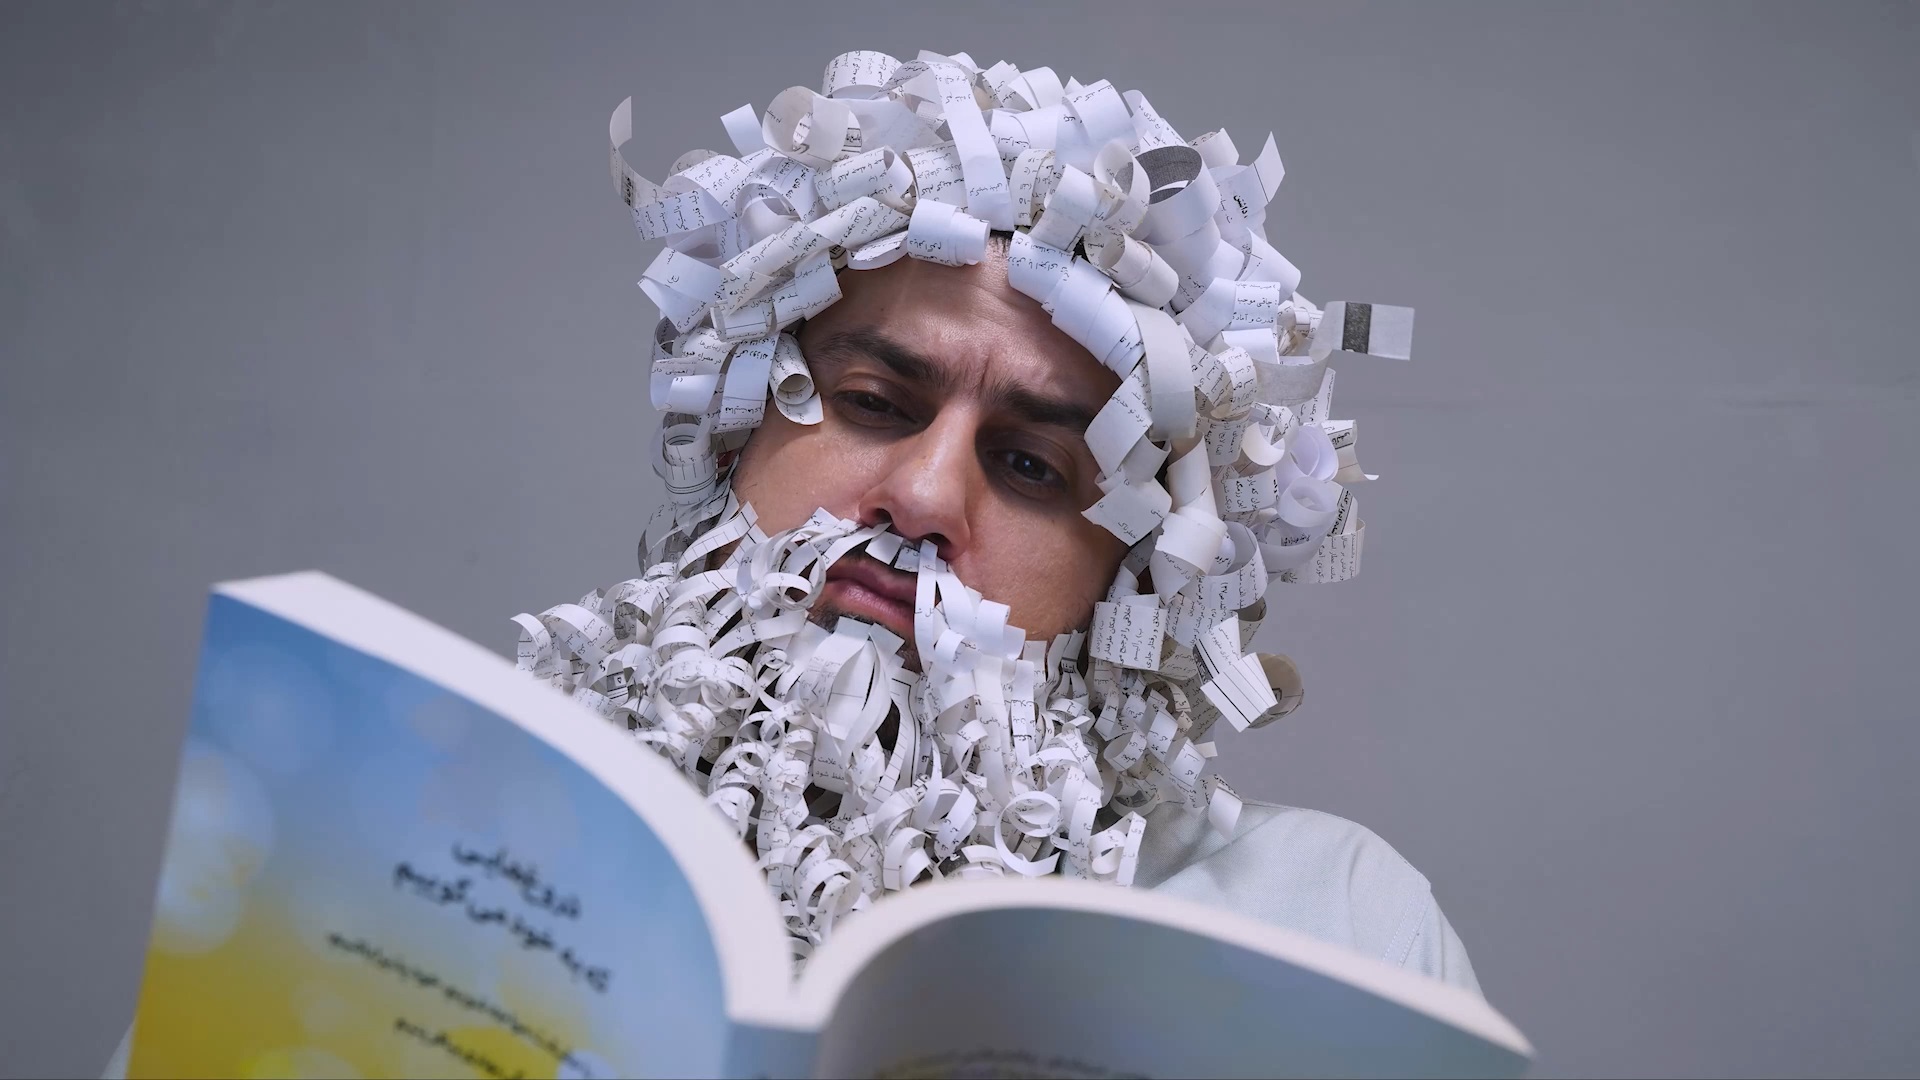 نمایش بلوغ و پختگی حاصل شده از کتاب خواندن با گریم ریش و موی کاغذی